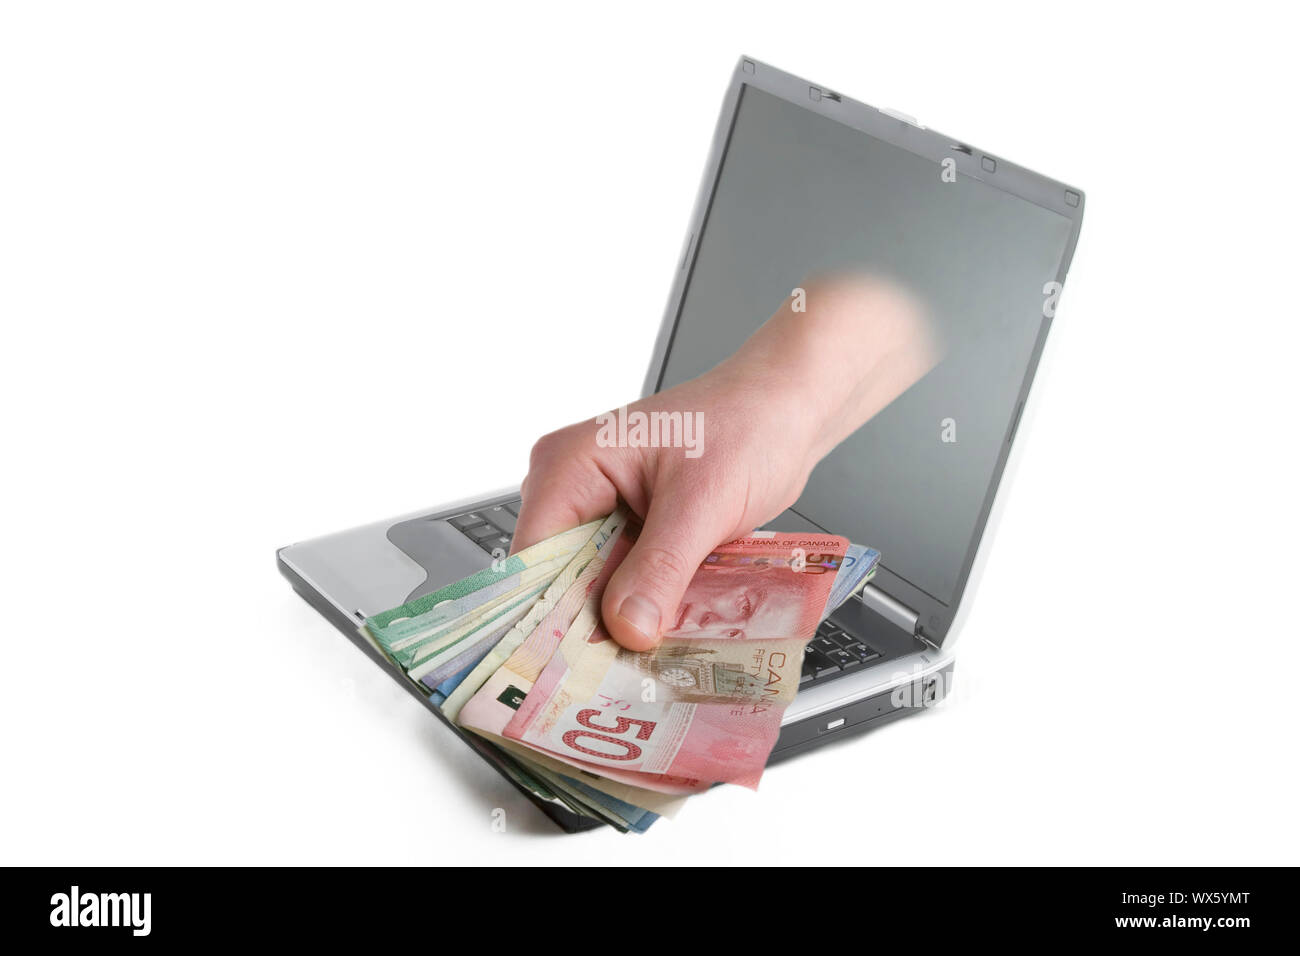 Une main qui sort de l'écran d'un ordinateur avec l'argent canadien. Banque D'Images